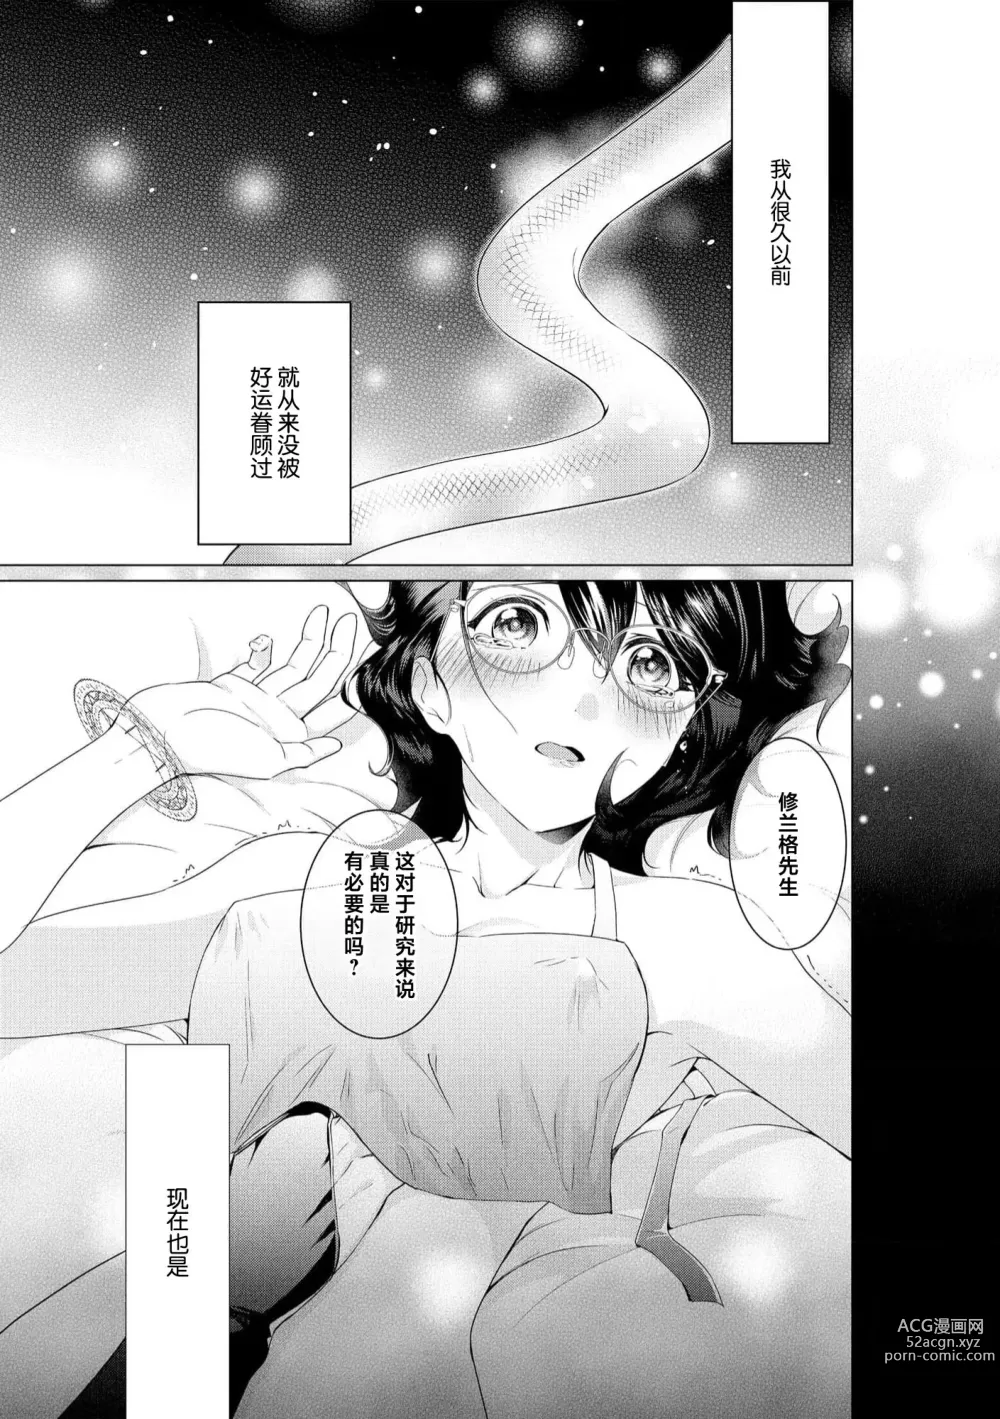 Page 5 of manga 白蛇大人的溺爱试验~苦命OL在异世界缔结了淫荡契约…~